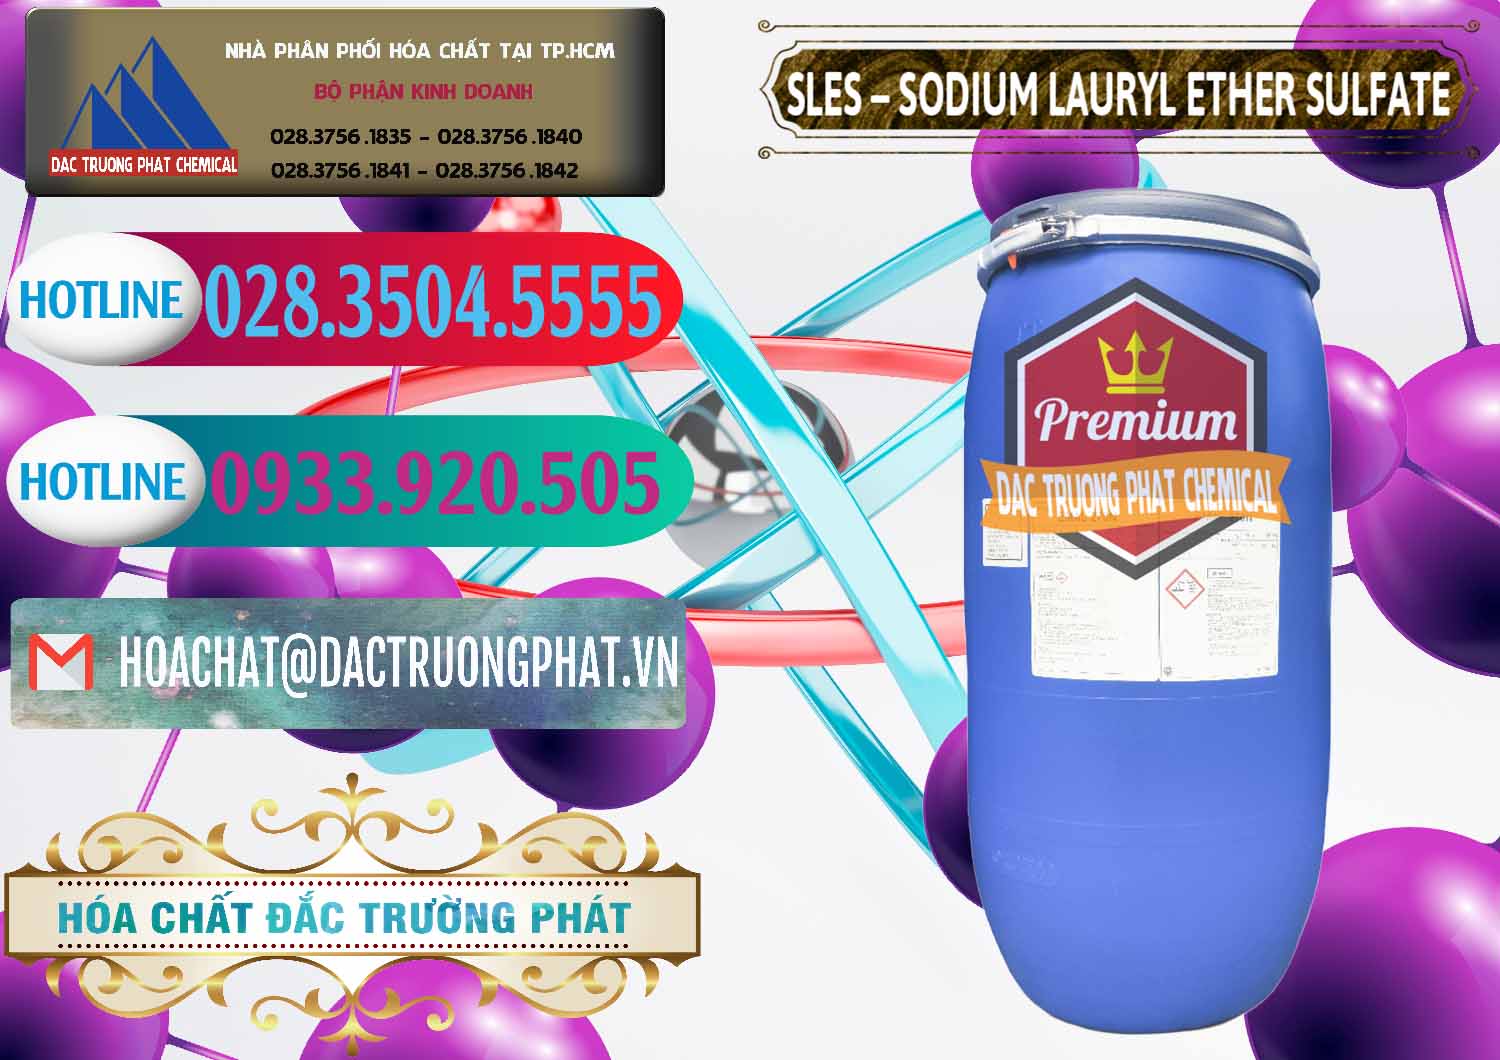 Nơi nhập khẩu ( bán ) Chất Tạo Bọt Sles - Sodium Lauryl Ether Sulphate Kao Indonesia - 0046 - Cty bán & cung cấp hóa chất tại TP.HCM - truongphat.vn